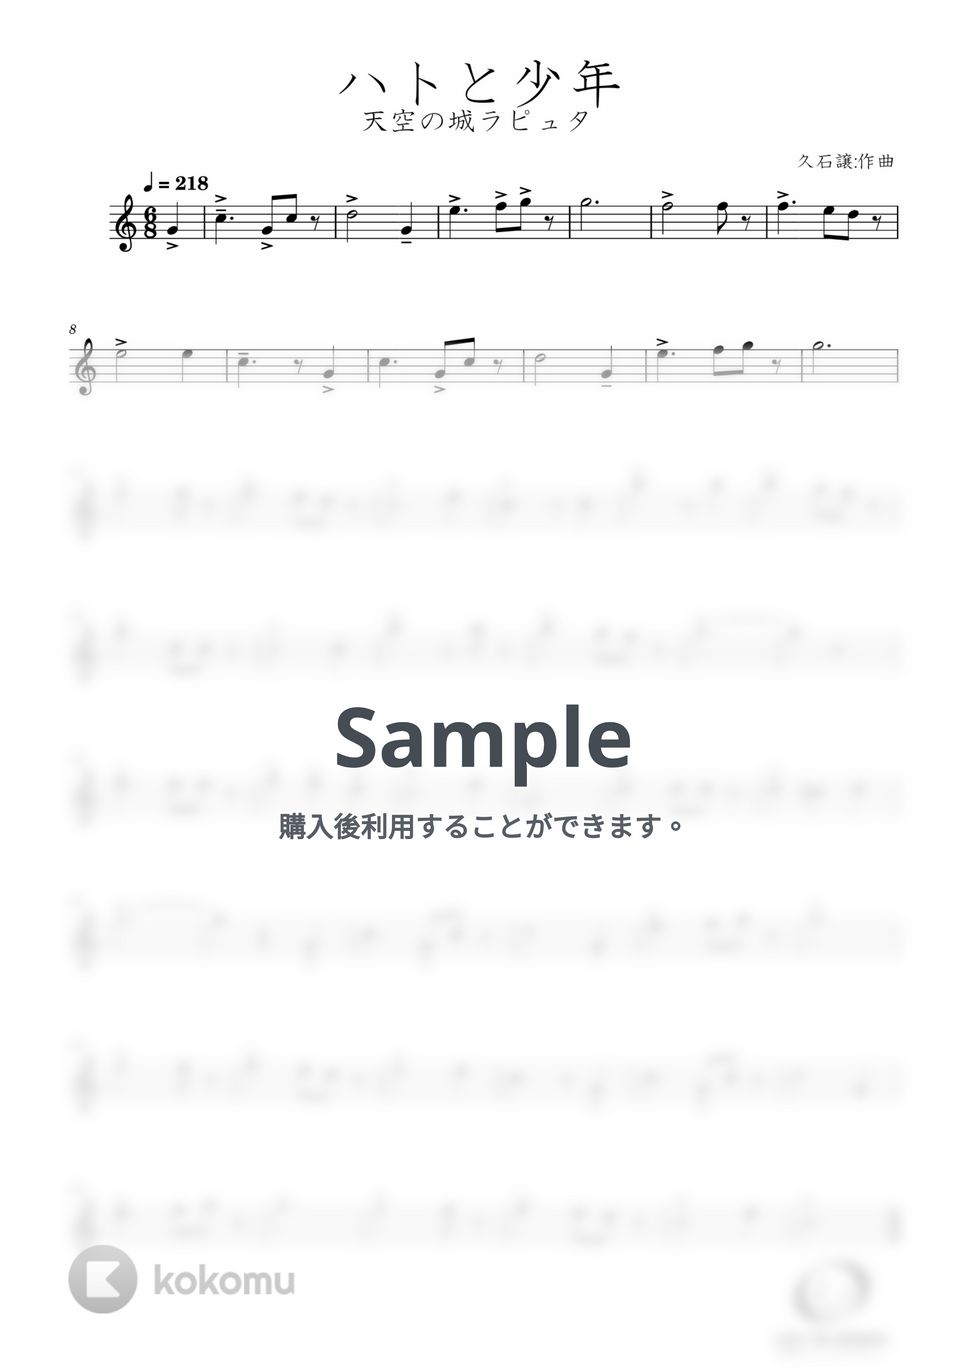 久石譲 - ハトと少年 (Trumpet Solo) by Windworld